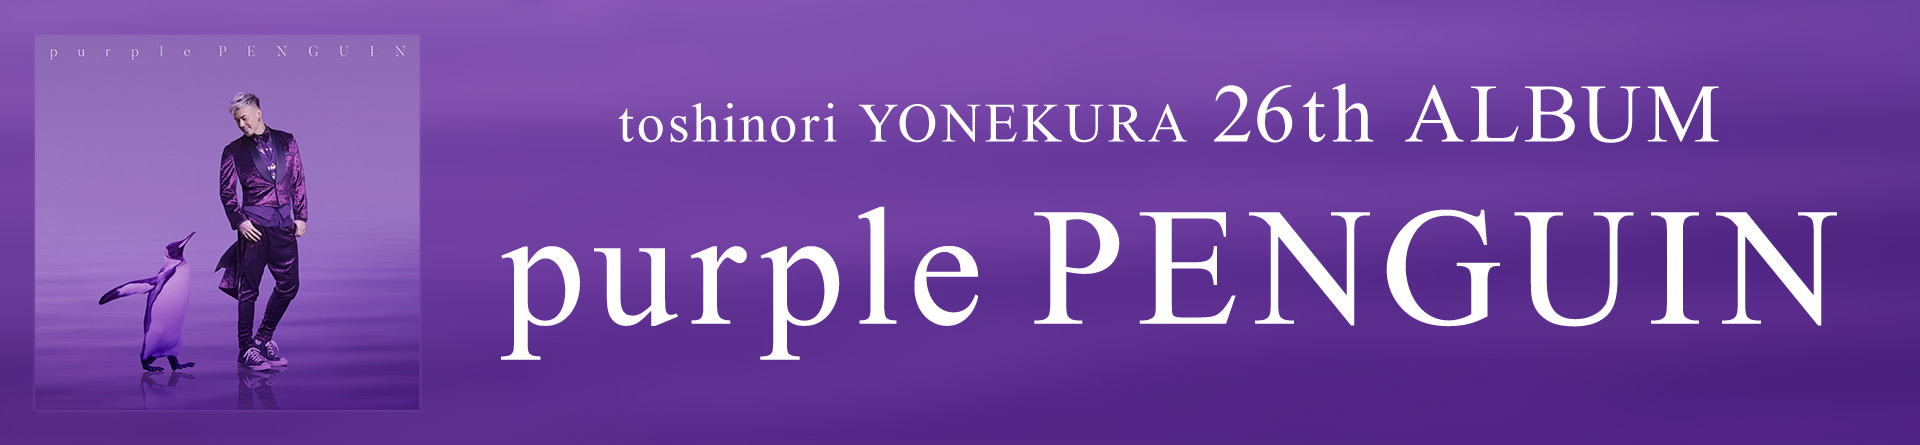 26th album「purple PENGUIN」